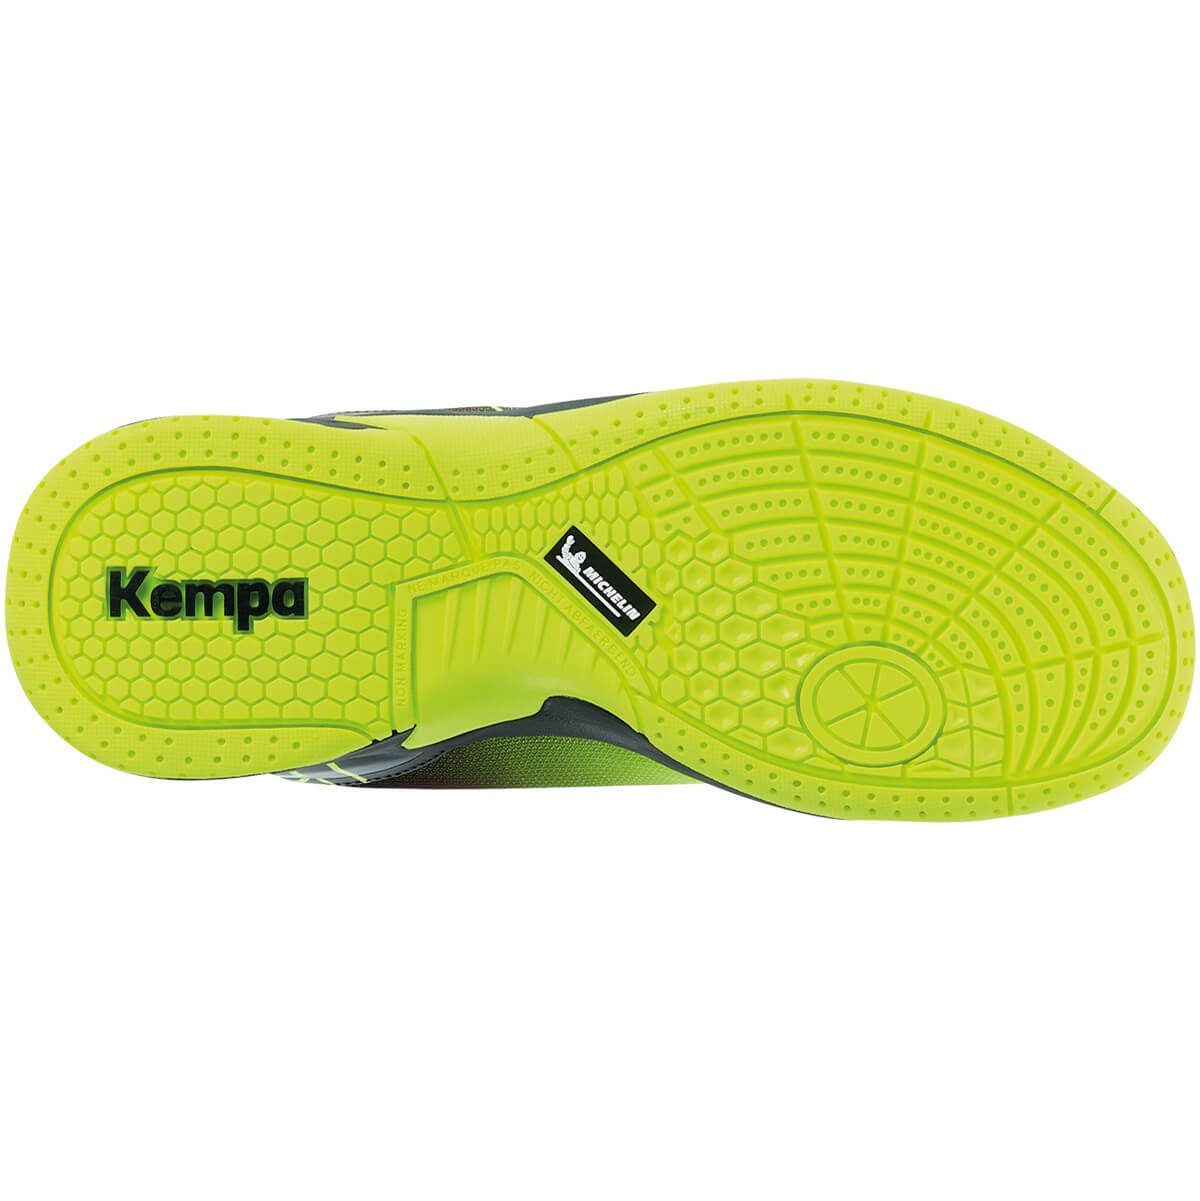 Kempa Hallen-Sport-Schuhe Kempa Hallenschuh fluo gelb/schwarz